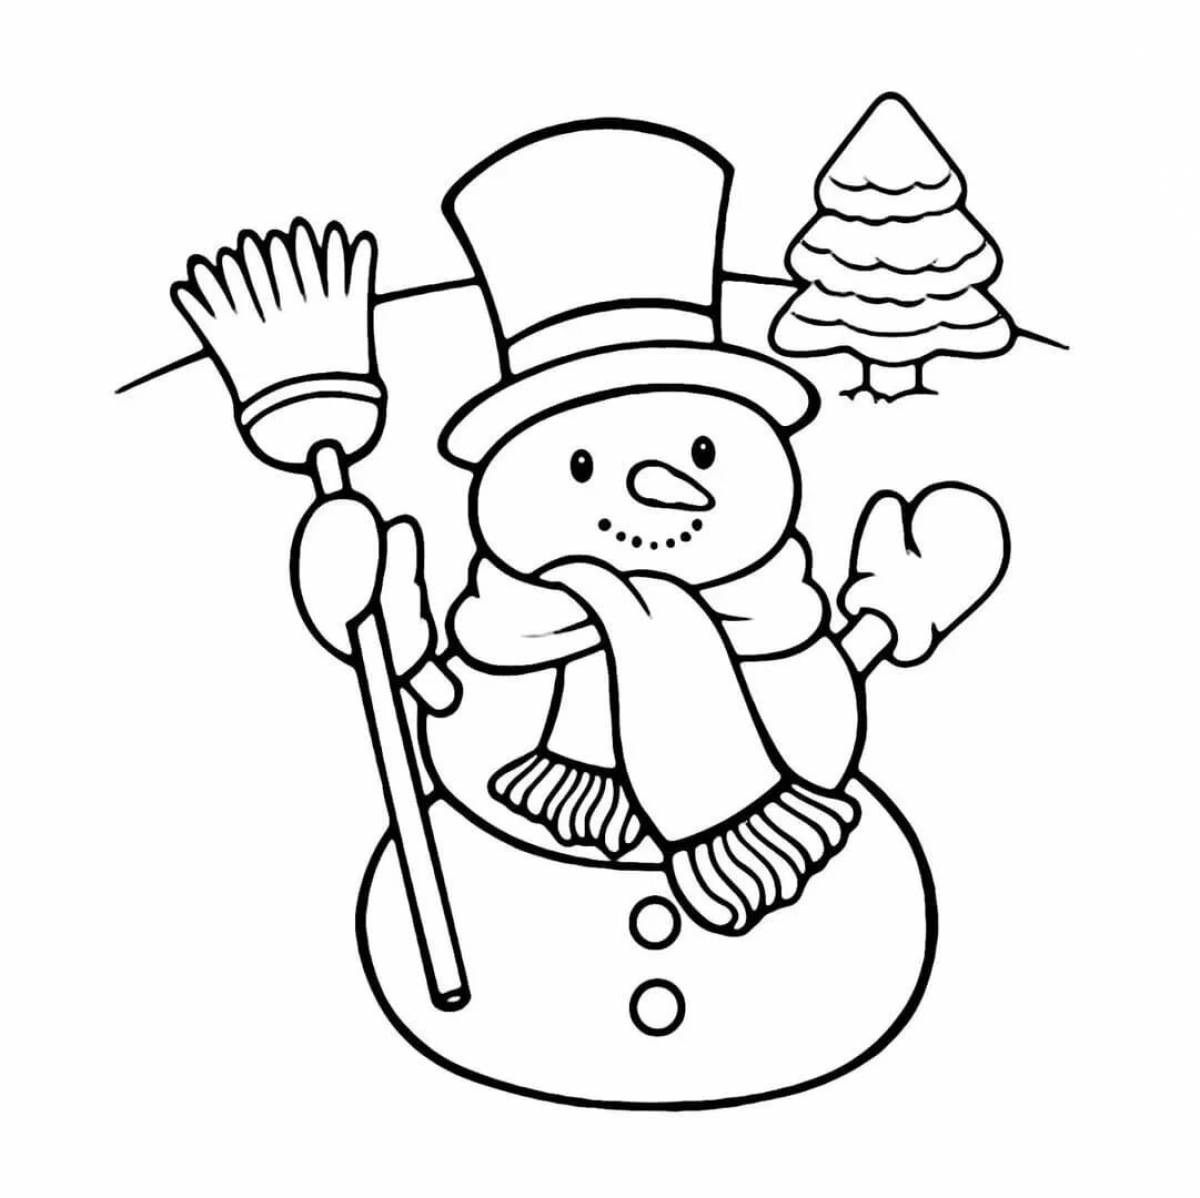 Children's snowman #1